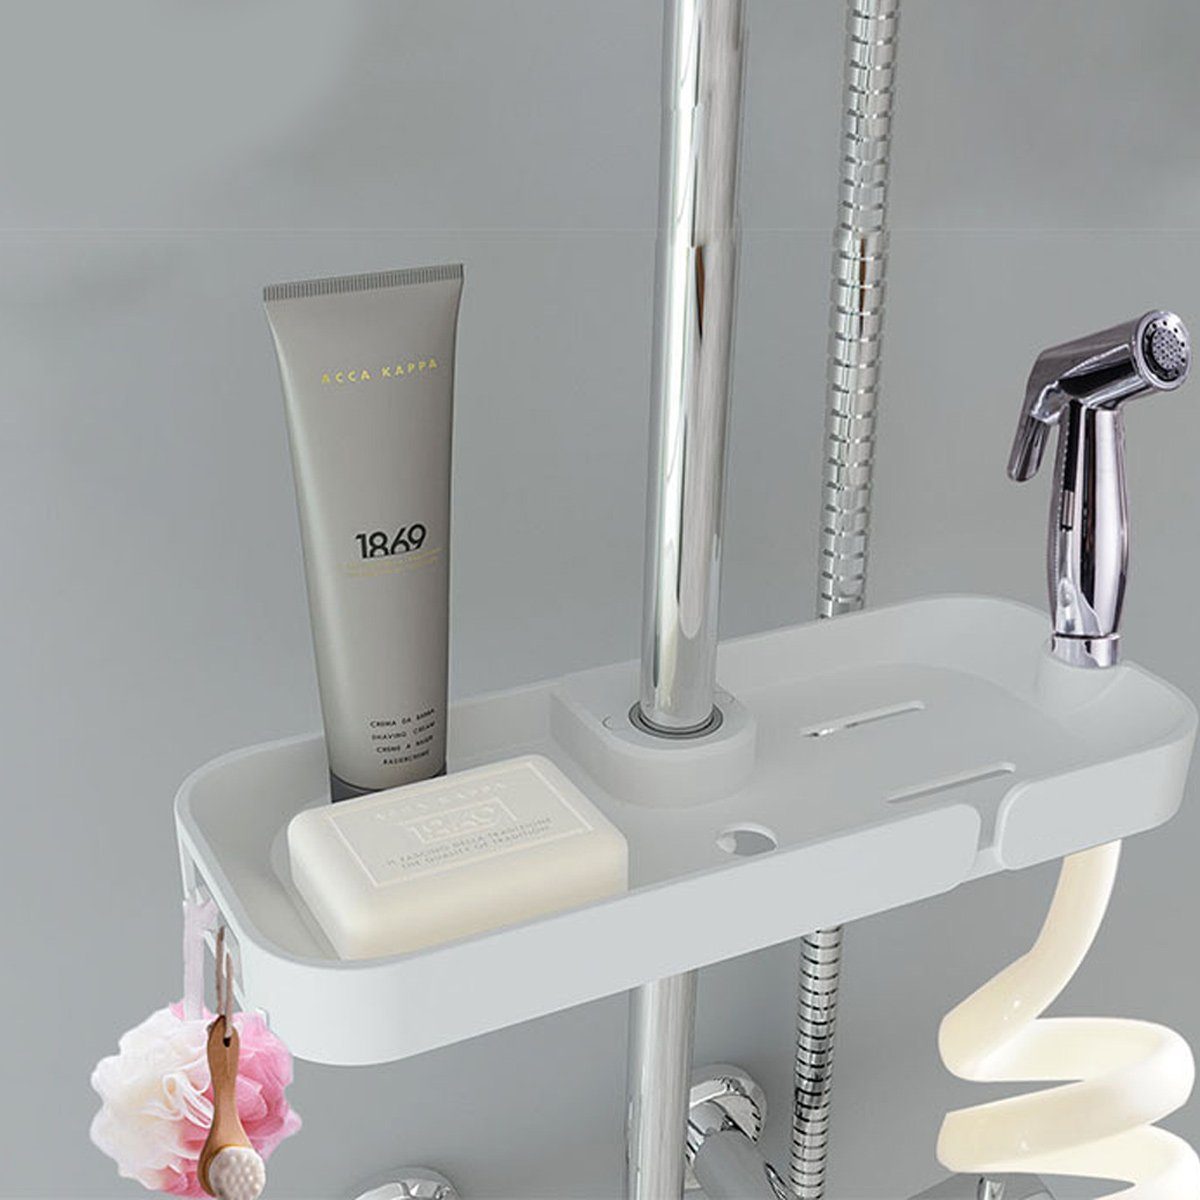 Rack,mit Hängen zum Halter Jormftte Dusche Duschkorb Weiß Dusche Duschablage Verstellbar